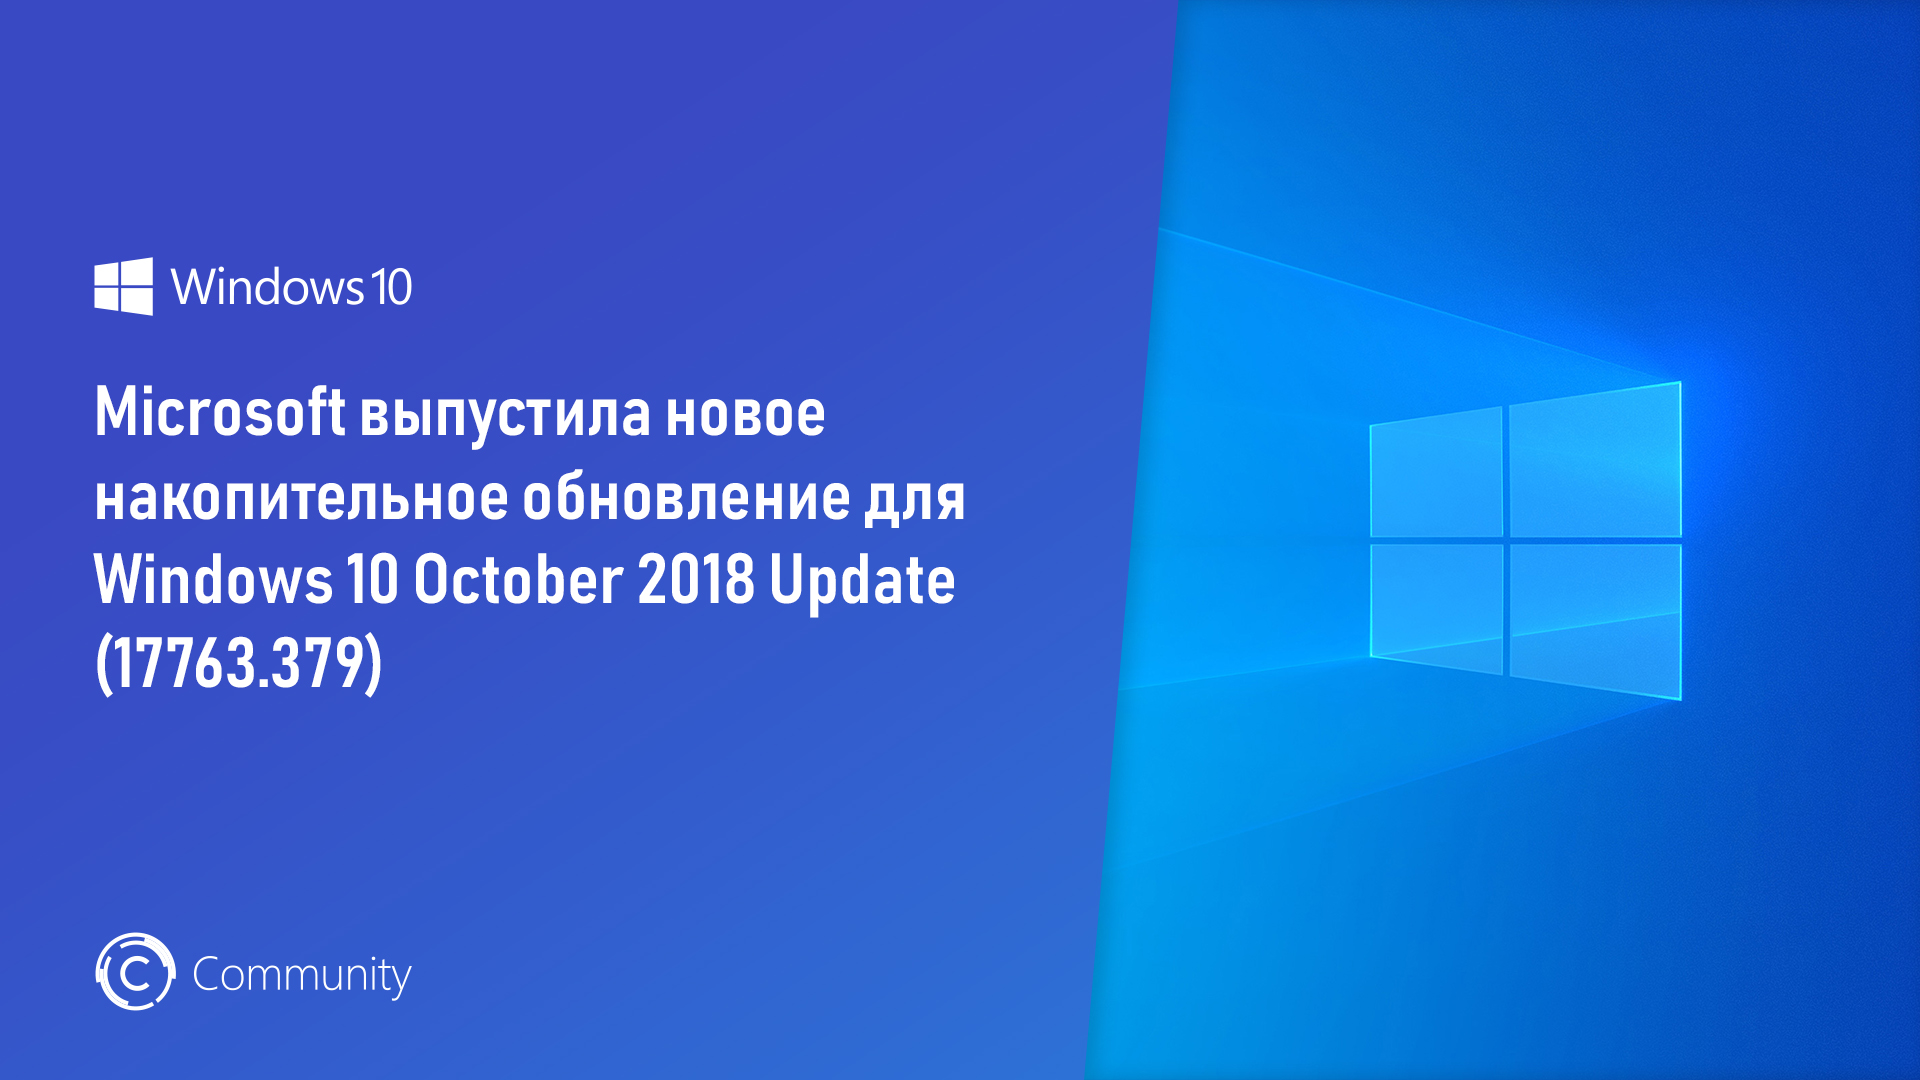 Изменения май 2019. Windows 10 May 2019. Версия May 2019 update (1903). Накопительное обновление. Windows 10 Updater.